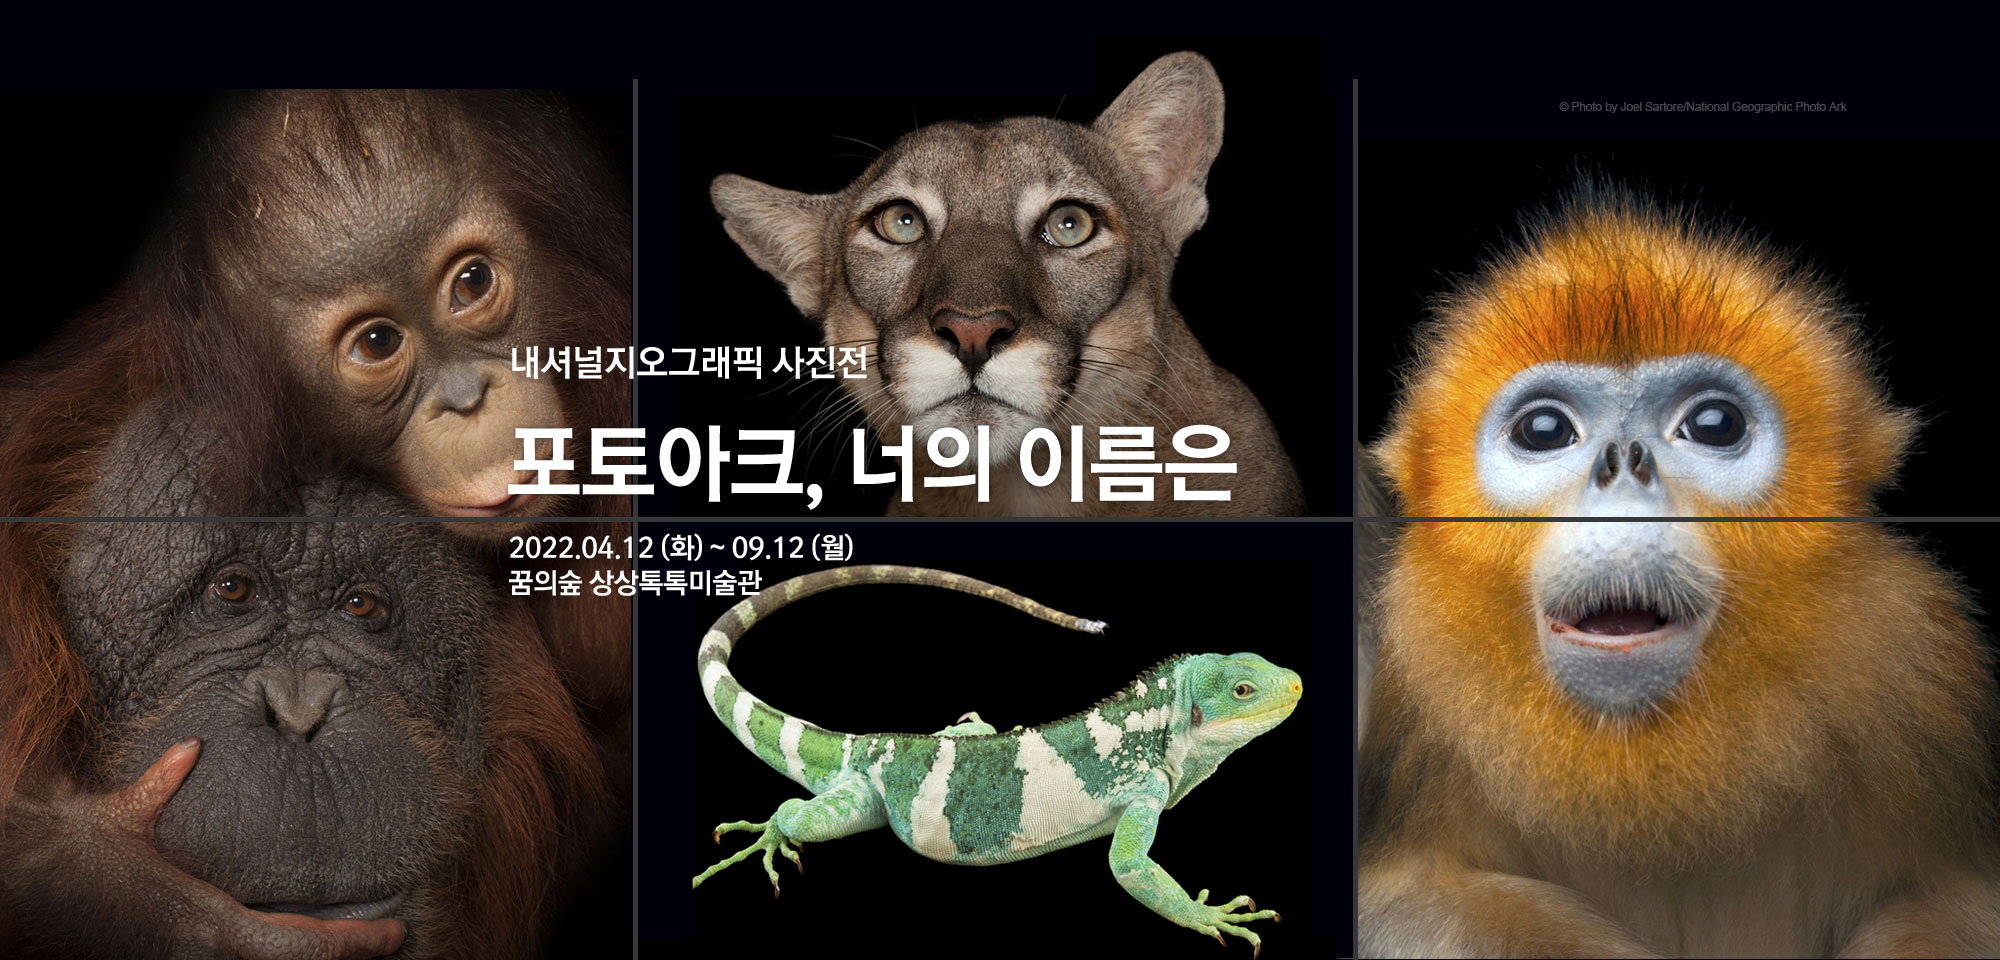 세상에서 가장 희귀한 동물원 <포토아크, 너의 이름은> 내셔널지오그래픽 사진전 2022.04.12(화)~09.12(월) 꿈의숲 상상톡톡미술관